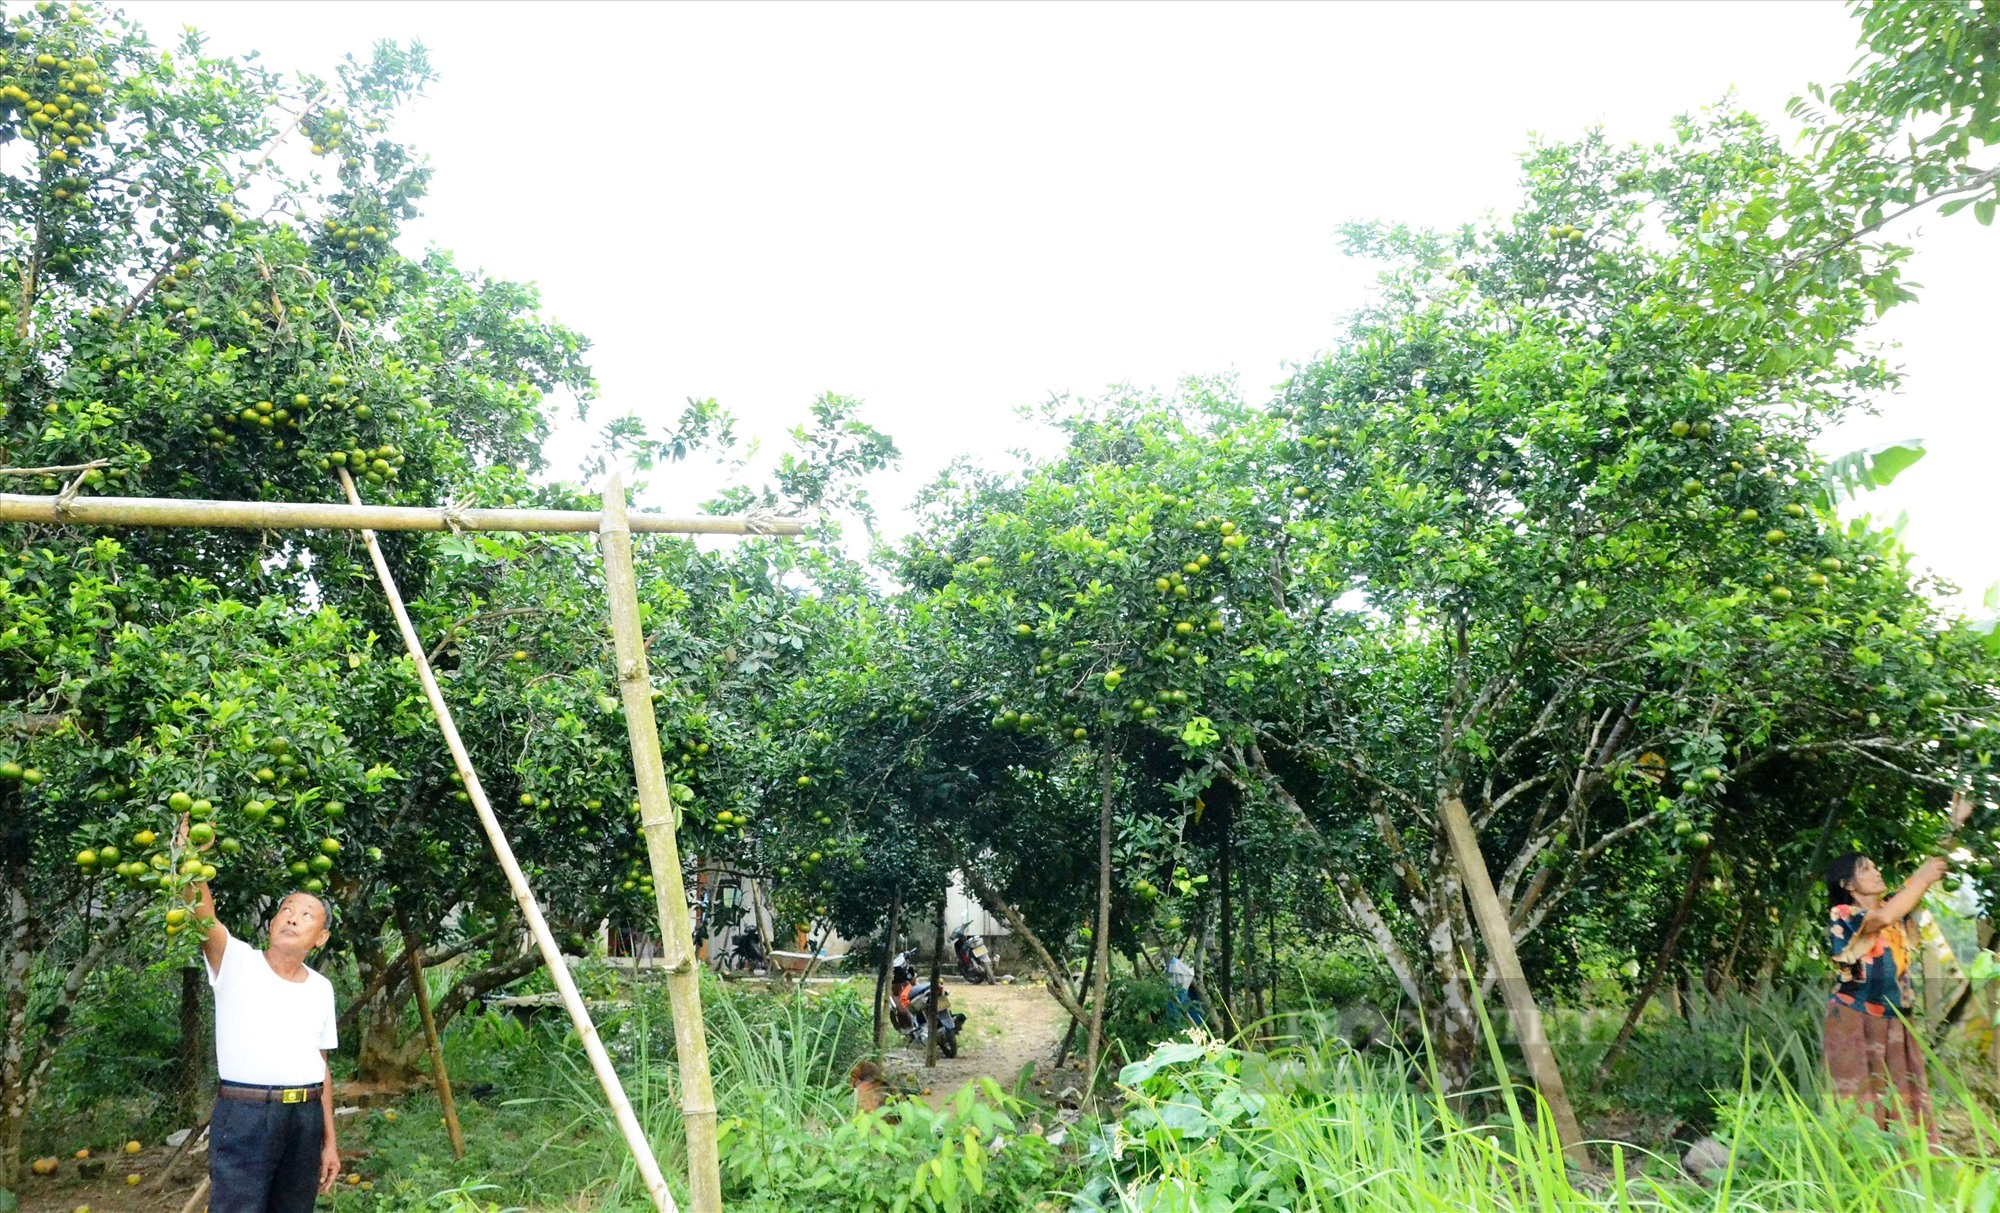 Về làng cổ hàng trăm năm tuổi ở Quảng Nam chiêm ngưỡng vườn trái cây đủ màu xanh, đỏ, tím, vàng - Ảnh 3.